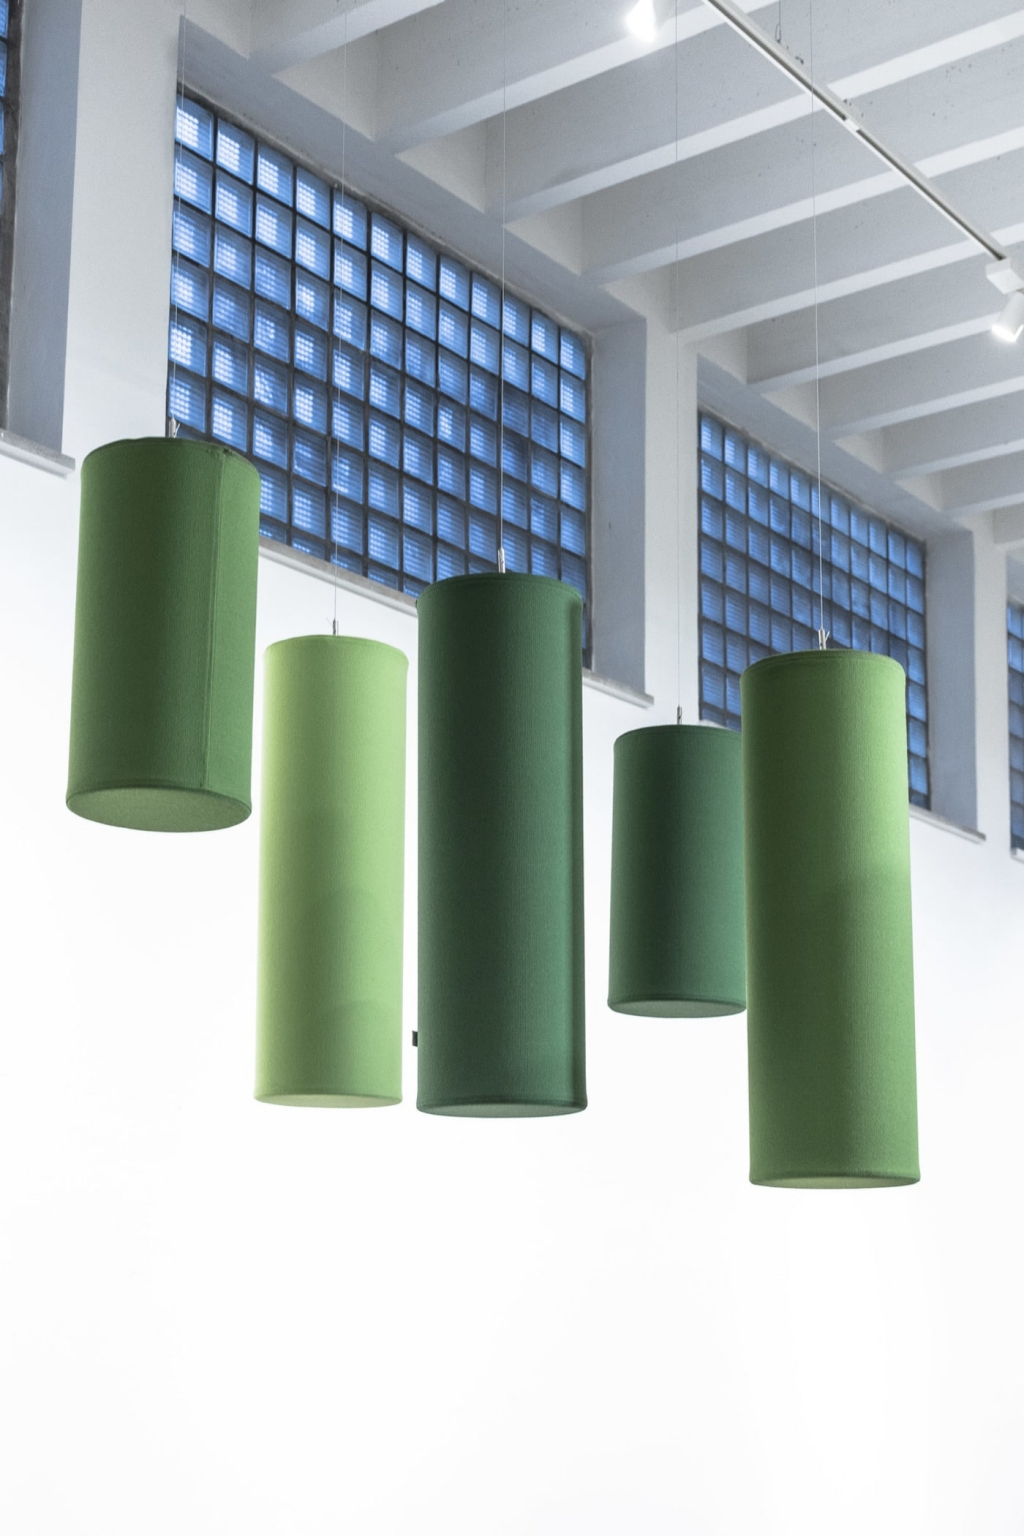 AOS Akustikzylinder in grün für Deckenabsorbtion